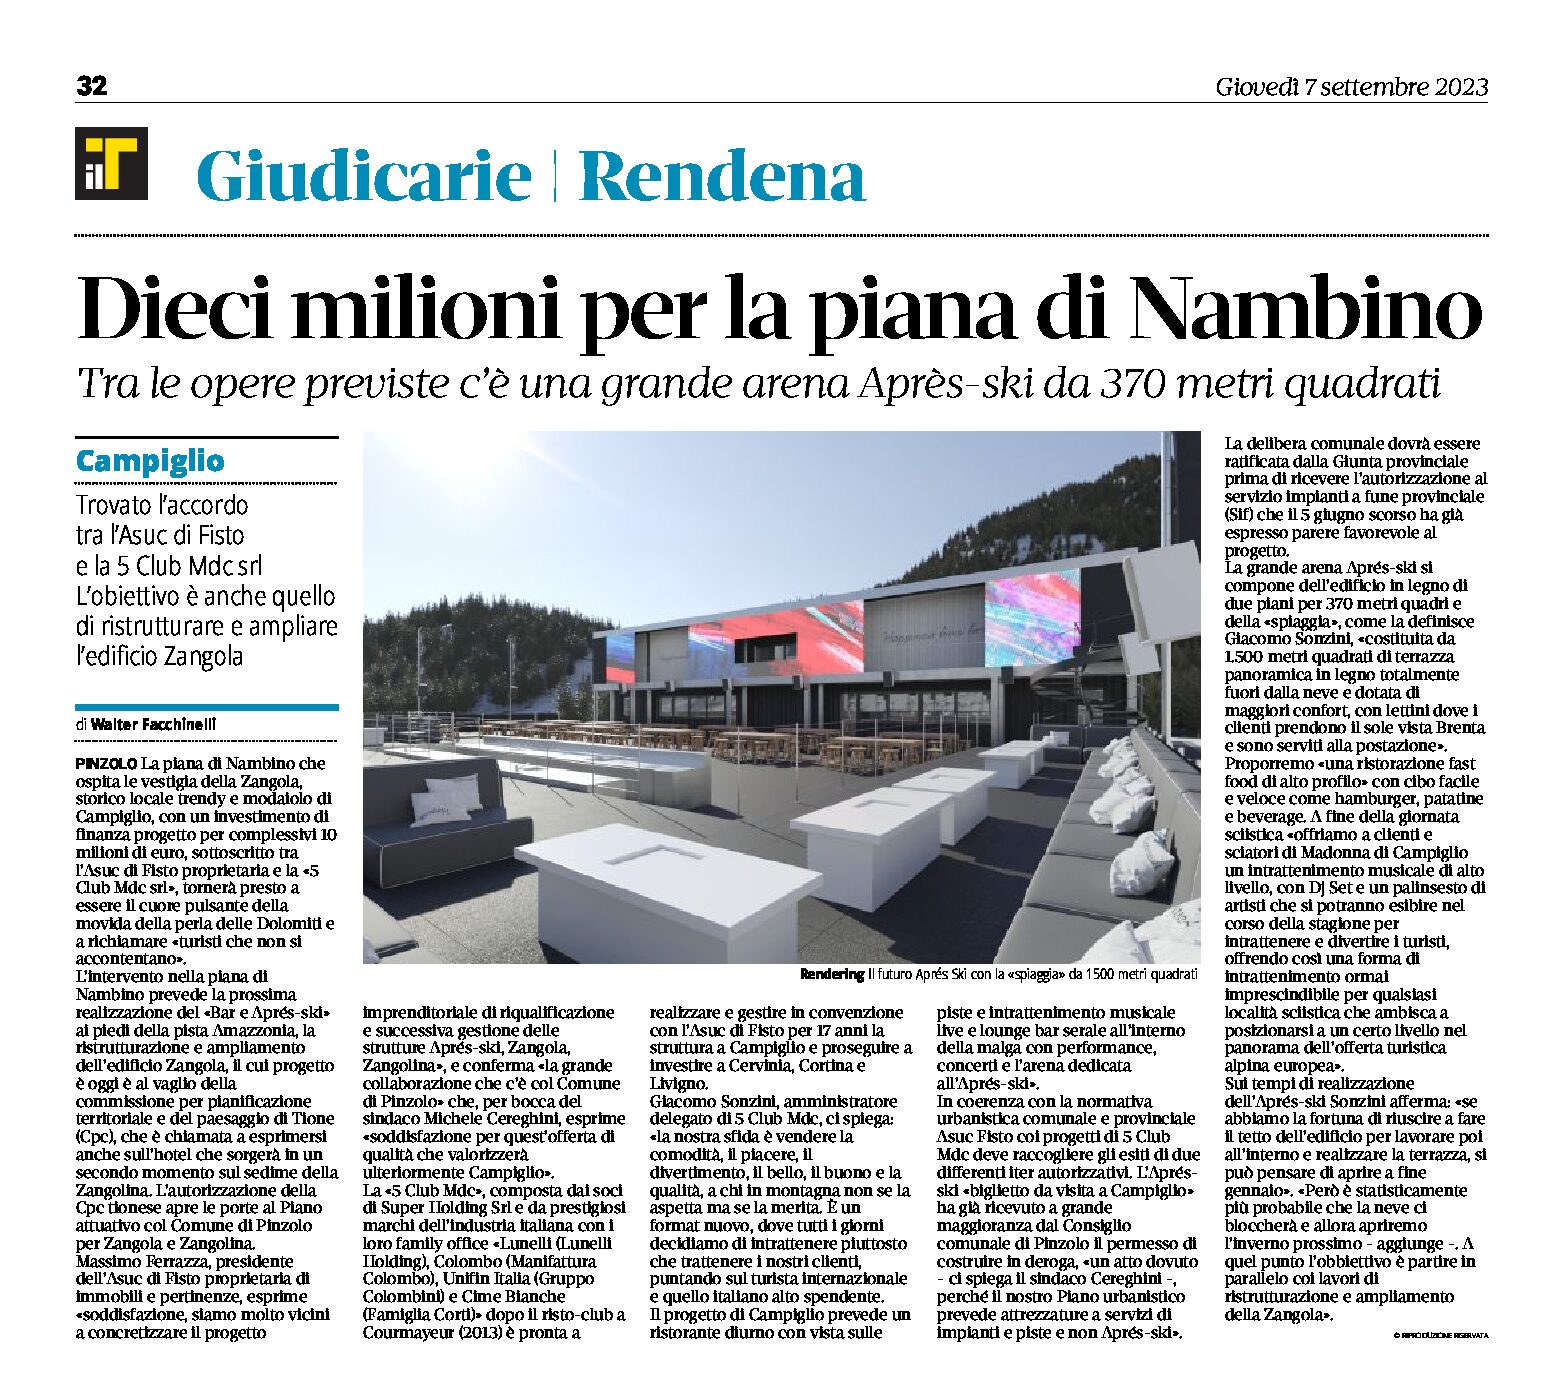 Pinzolo, piana di Nambino: previste opere per dieci milioni inclusa una grande arena Après-ski